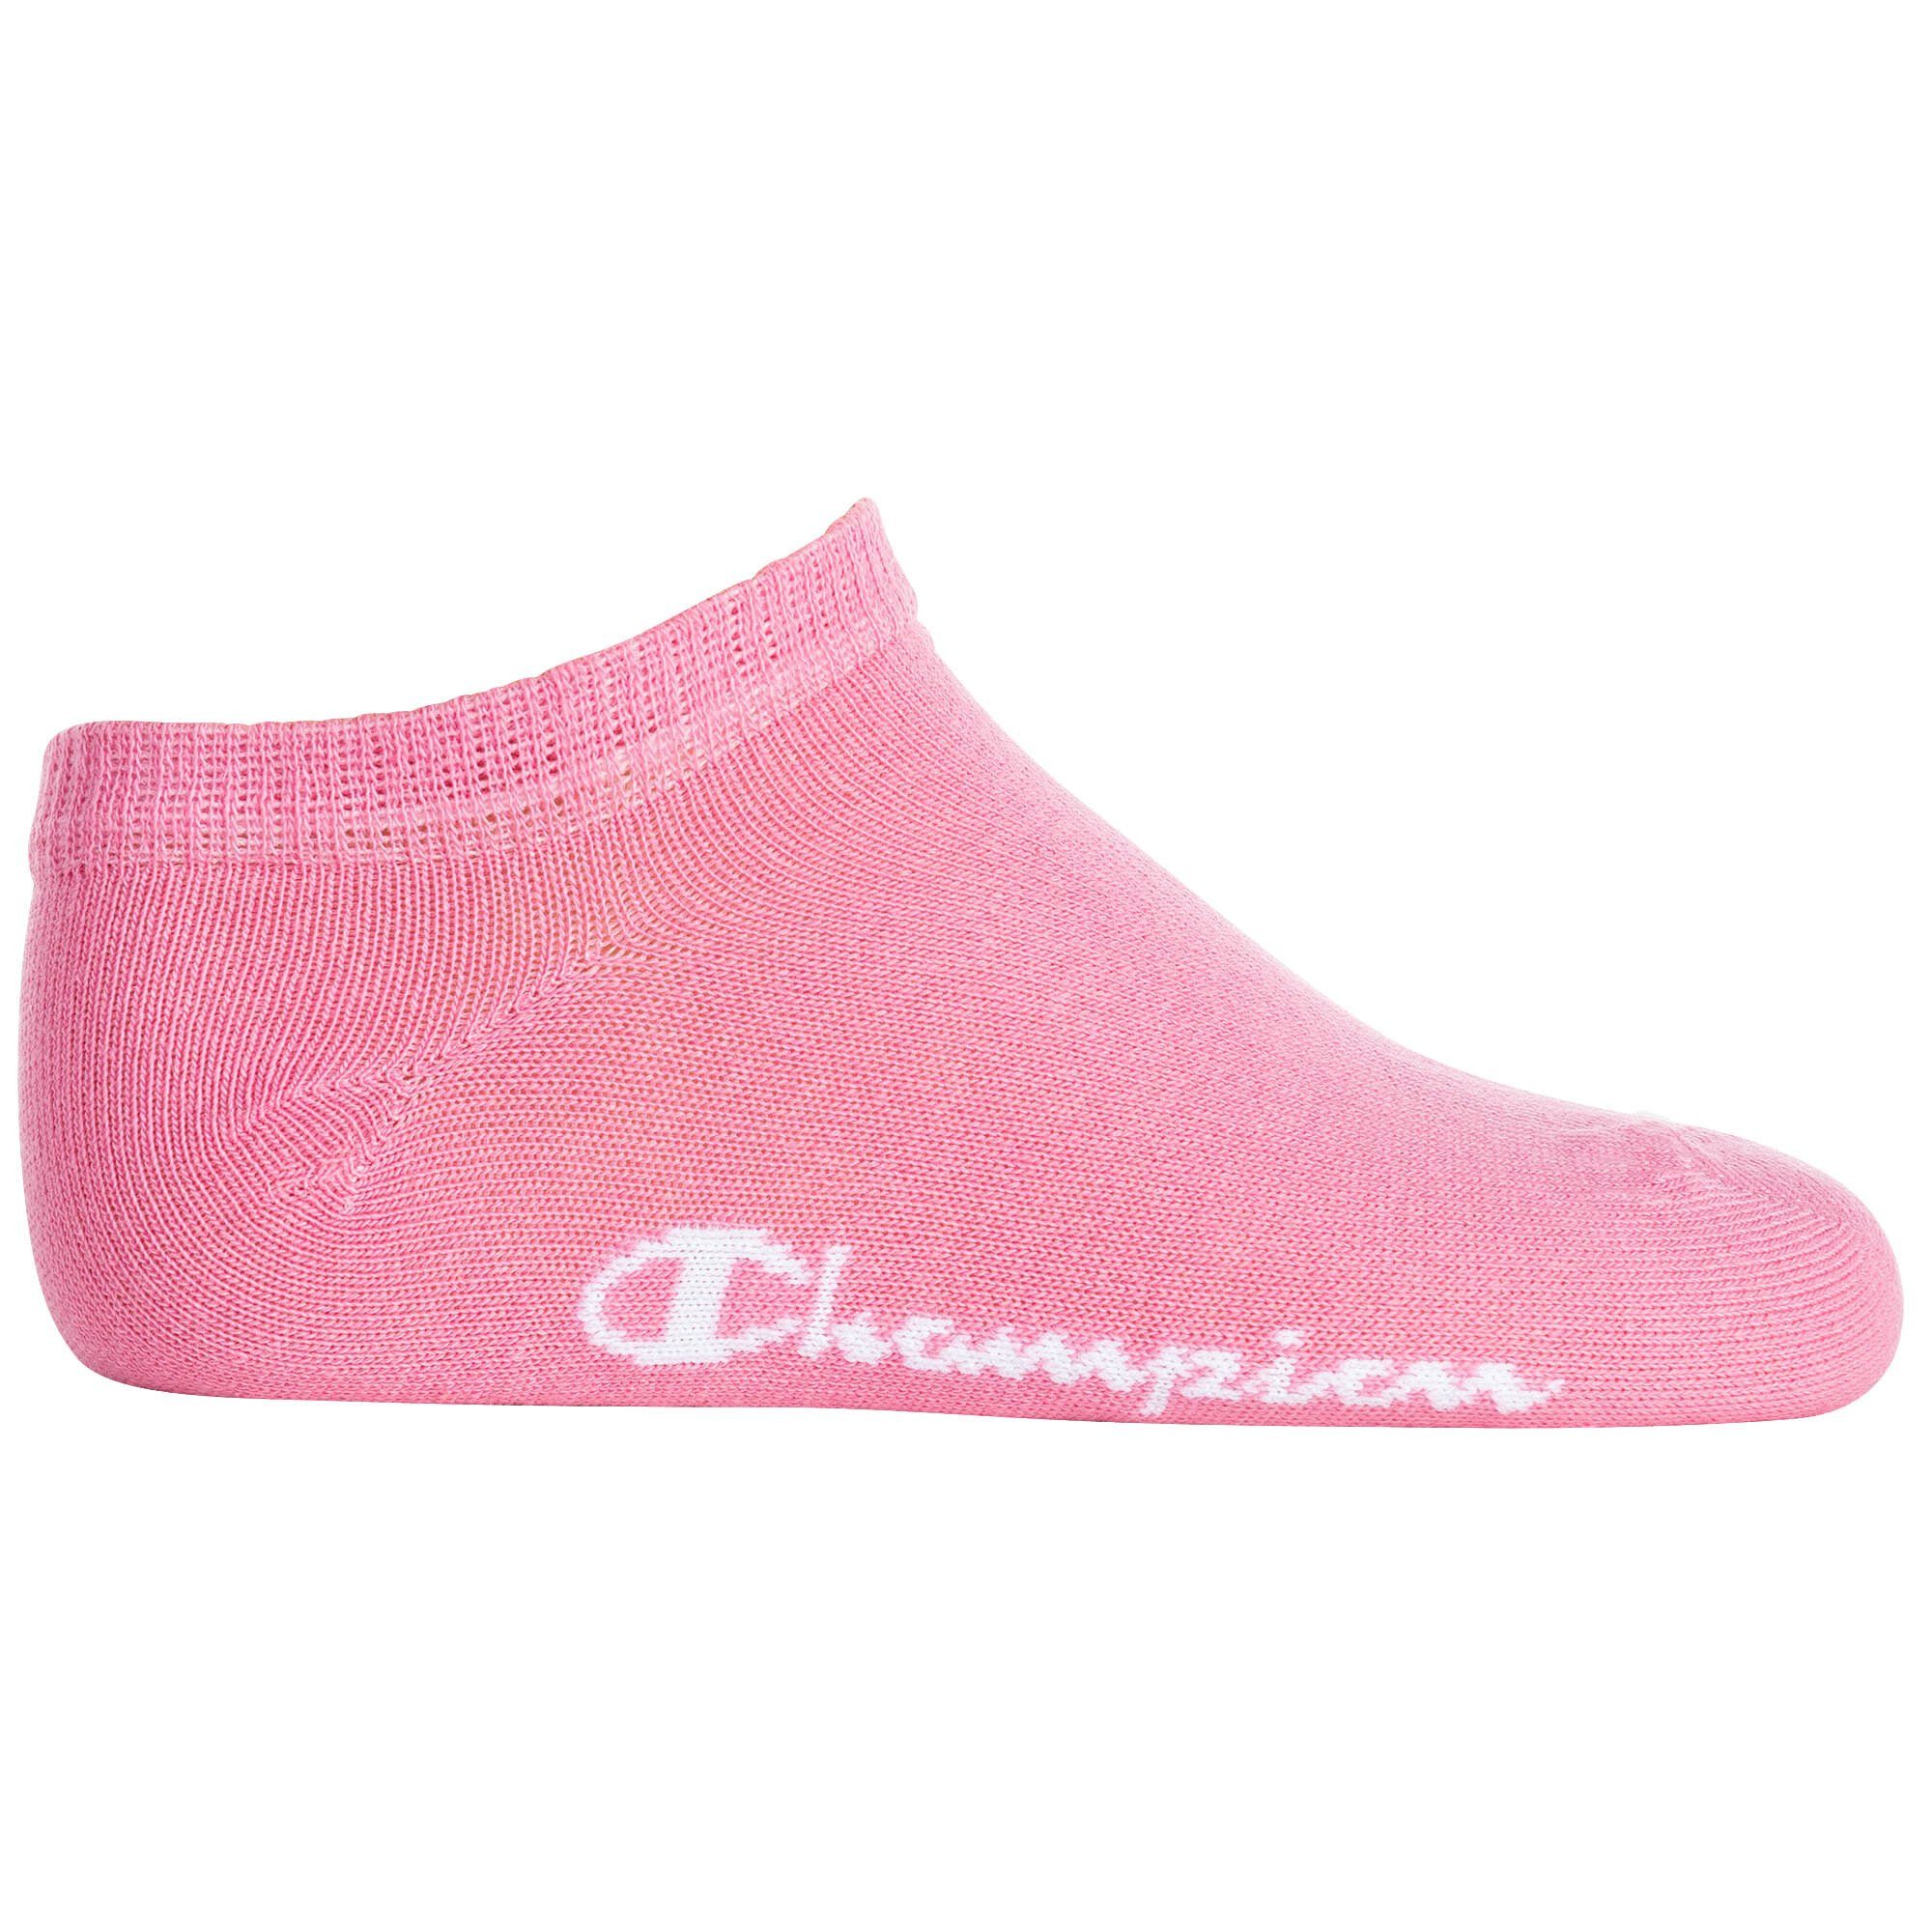 5er Pack- Weiß/Pink/Lila/Schwarz Logo Freizeitsocken Socken, Champion Kinder Sneaker,